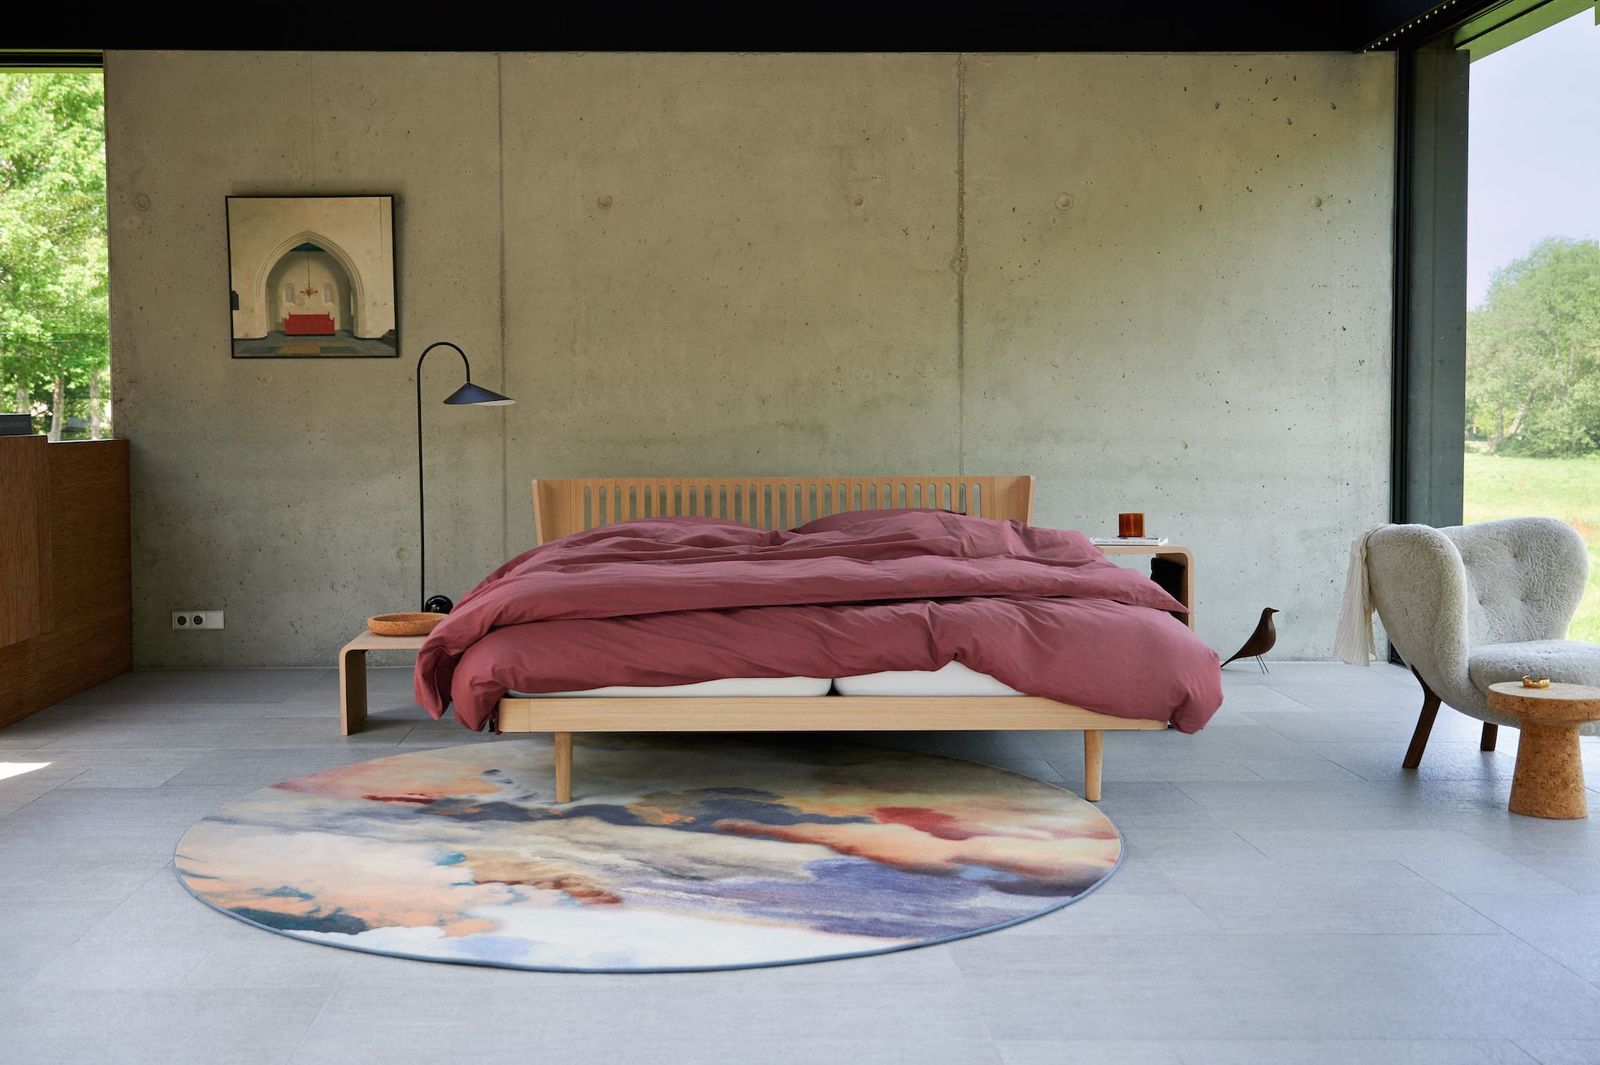 Auping Noa Bett mit Burgunderfarbener Bettwäsche steht vor einer rauen Betonwand